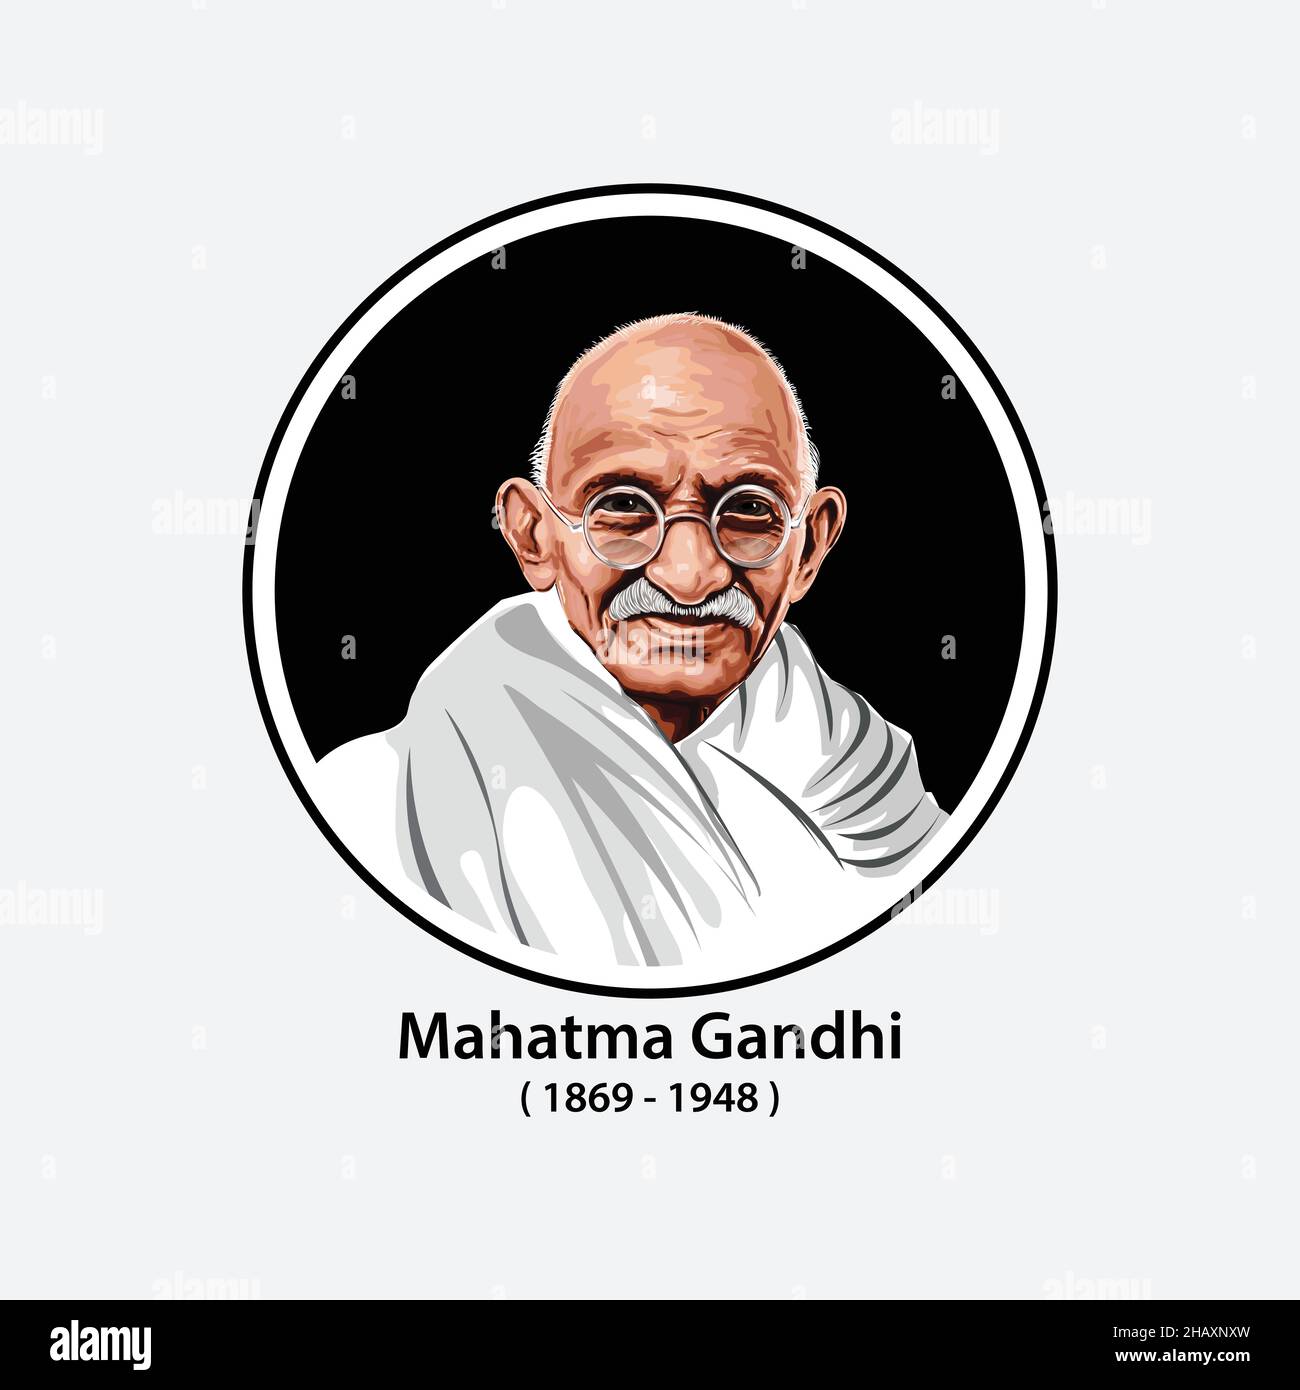 Il padre della nazione di Gandhi.India. Mahatma Gandhi immagine vettoriale, leader del movimento per l'indipendenza indiana contro il governo britannico. Il senso più popolare Illustrazione Vettoriale